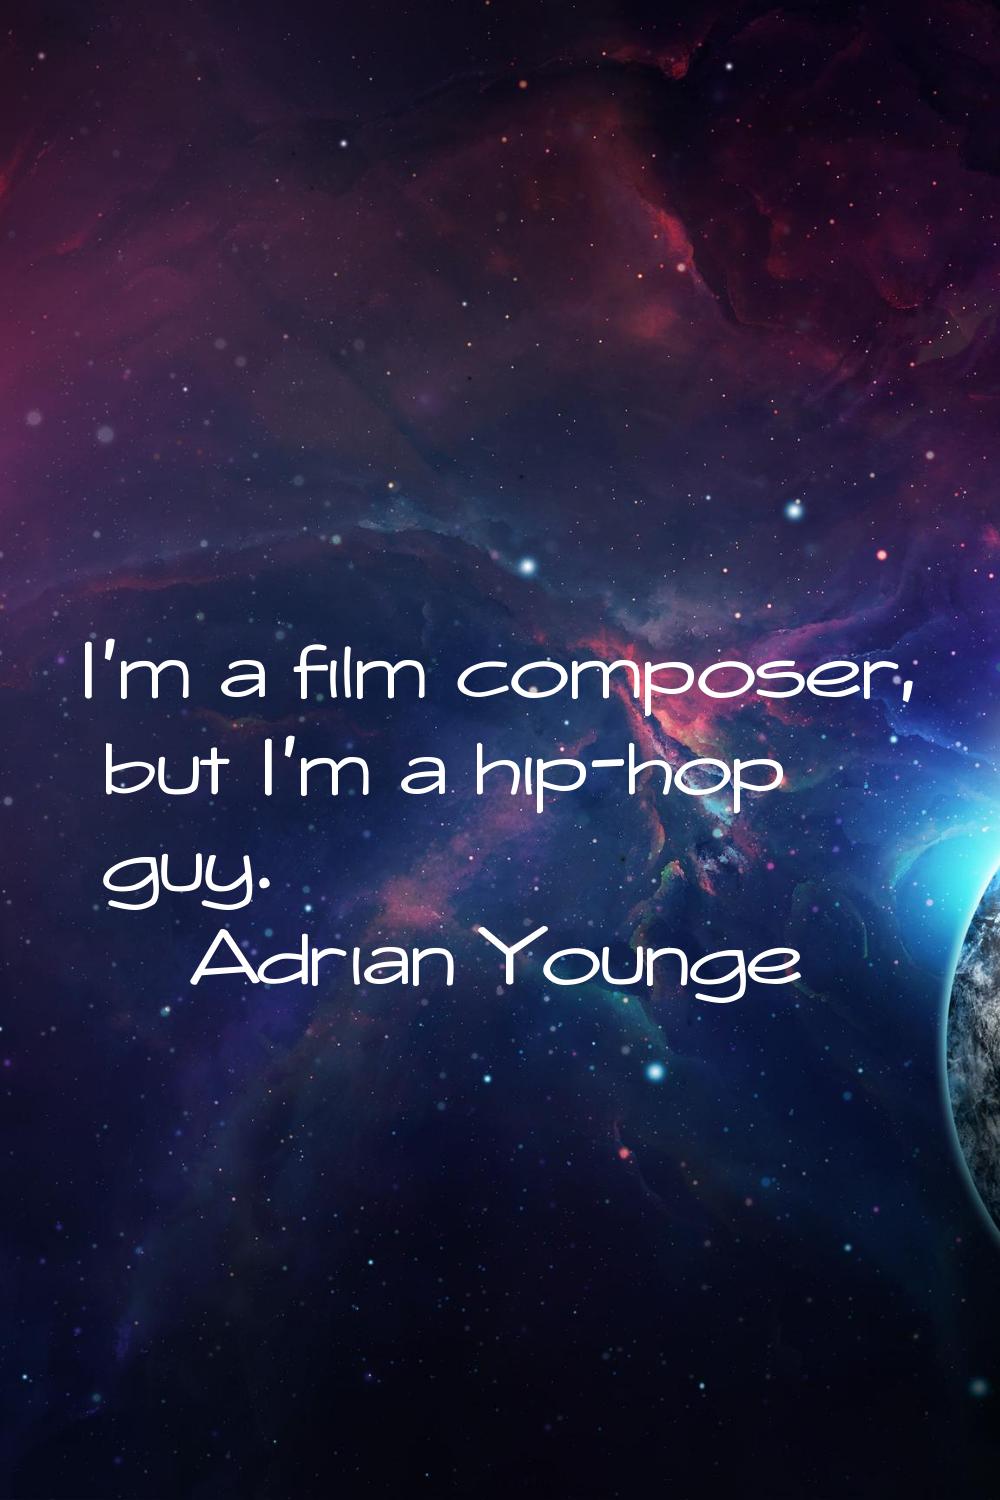 I'm a film composer, but I'm a hip-hop guy.